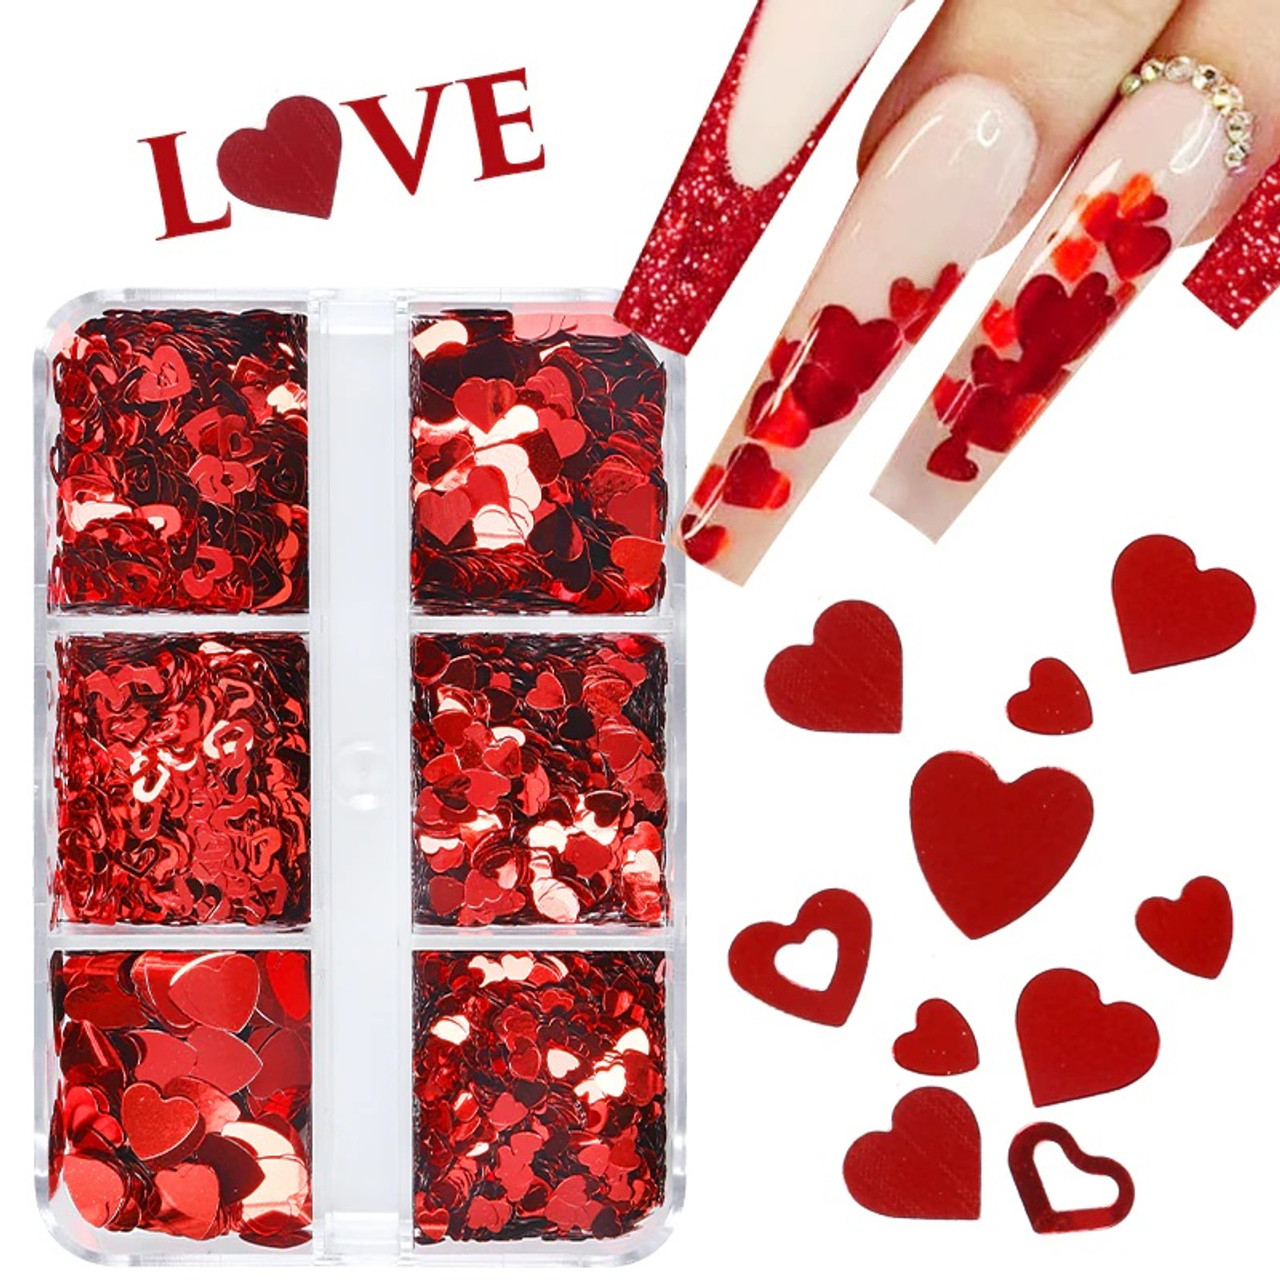 In Love Sparkling Glitter Hearts #2 (Faux Glitter) #red #decor